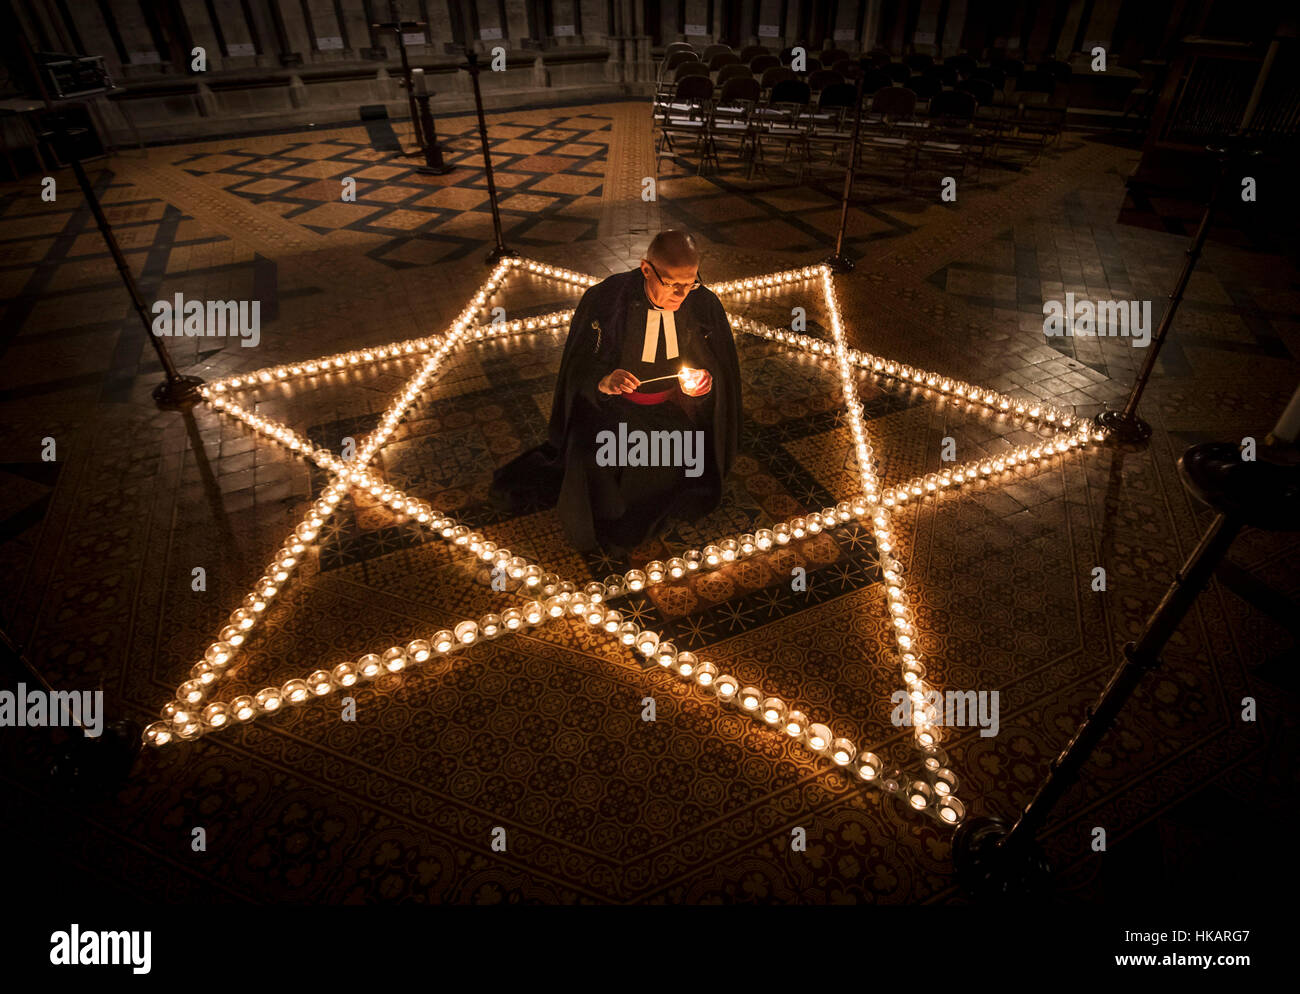 Christopher Chancellor Canon lumière aide à Collingwood 600 bougies en forme de l'étoile de David pour commémorer le Jour commémoratif de l'Holocauste à York Minster, York. Banque D'Images